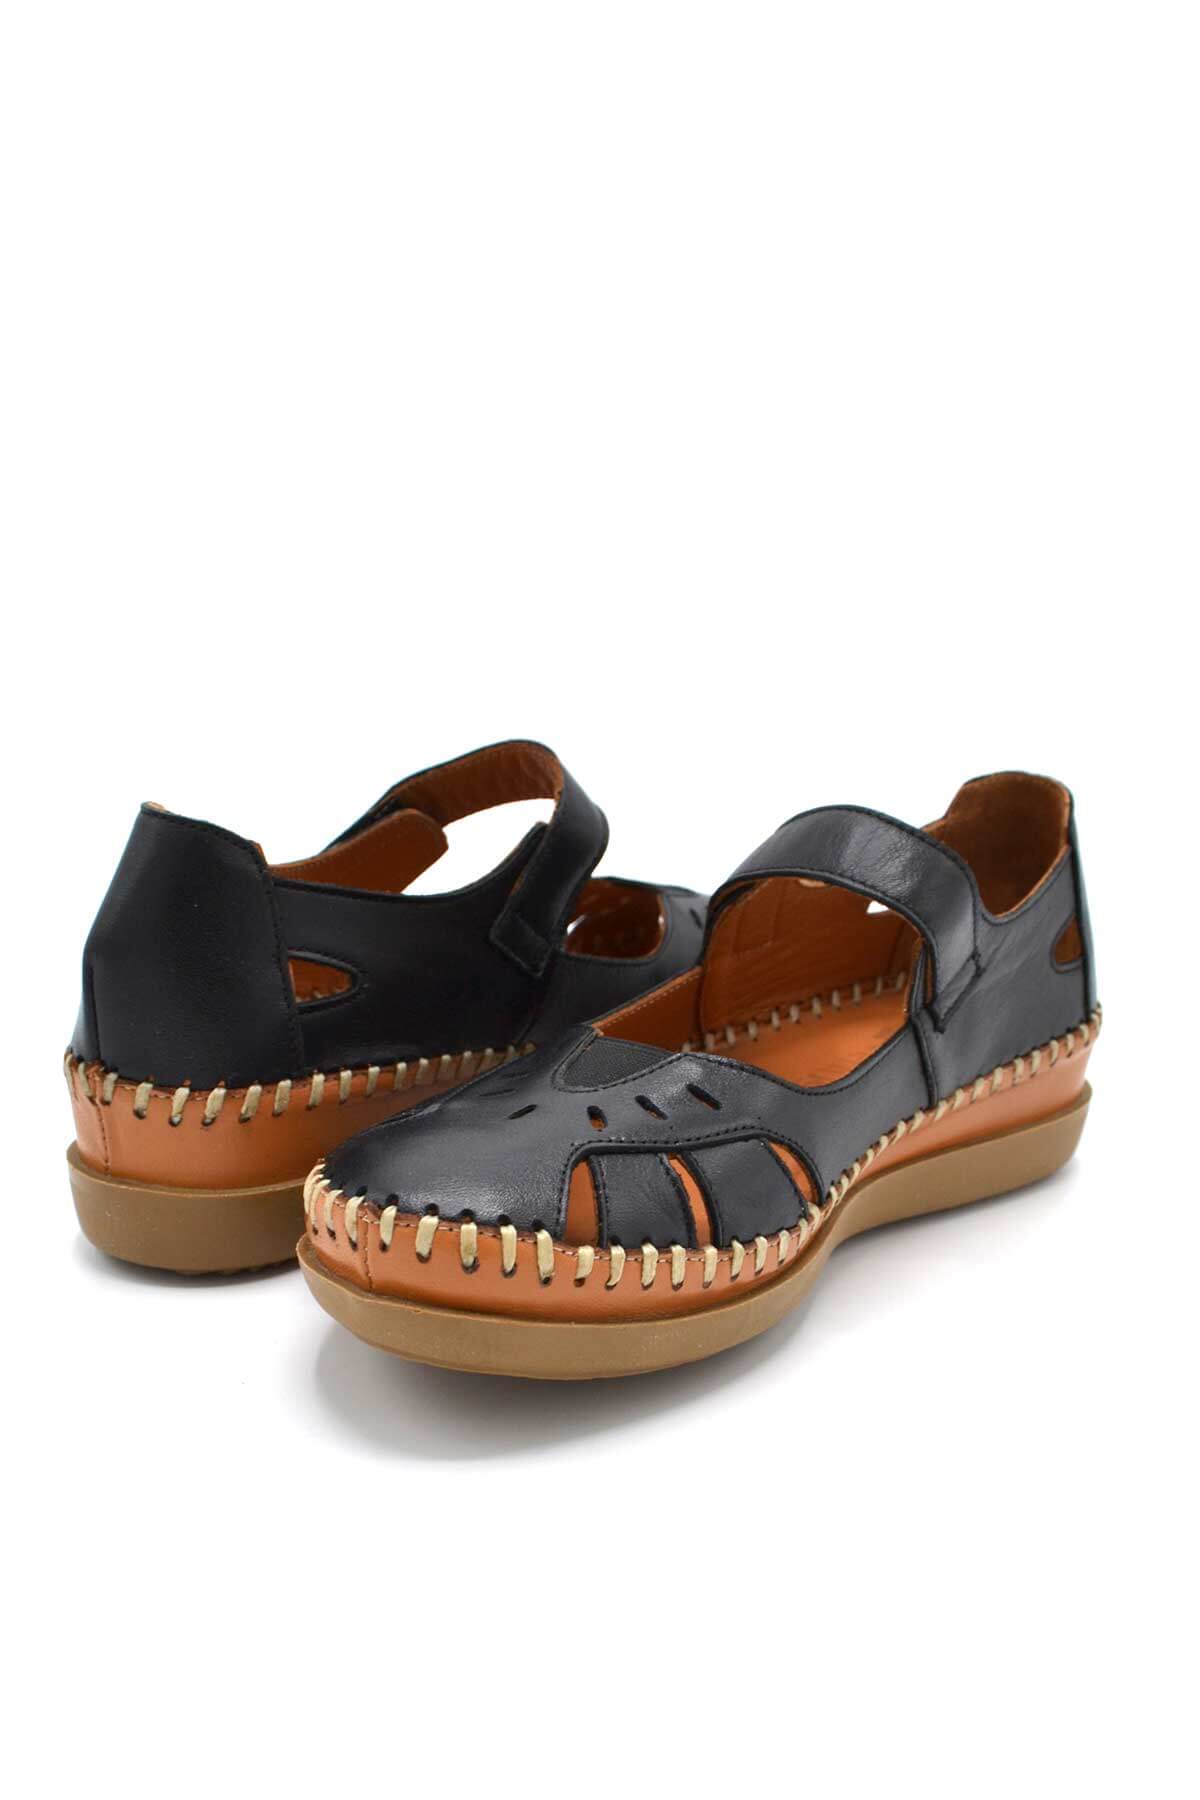 Kadın Comfort Deri Sandalet Siyah 22793524